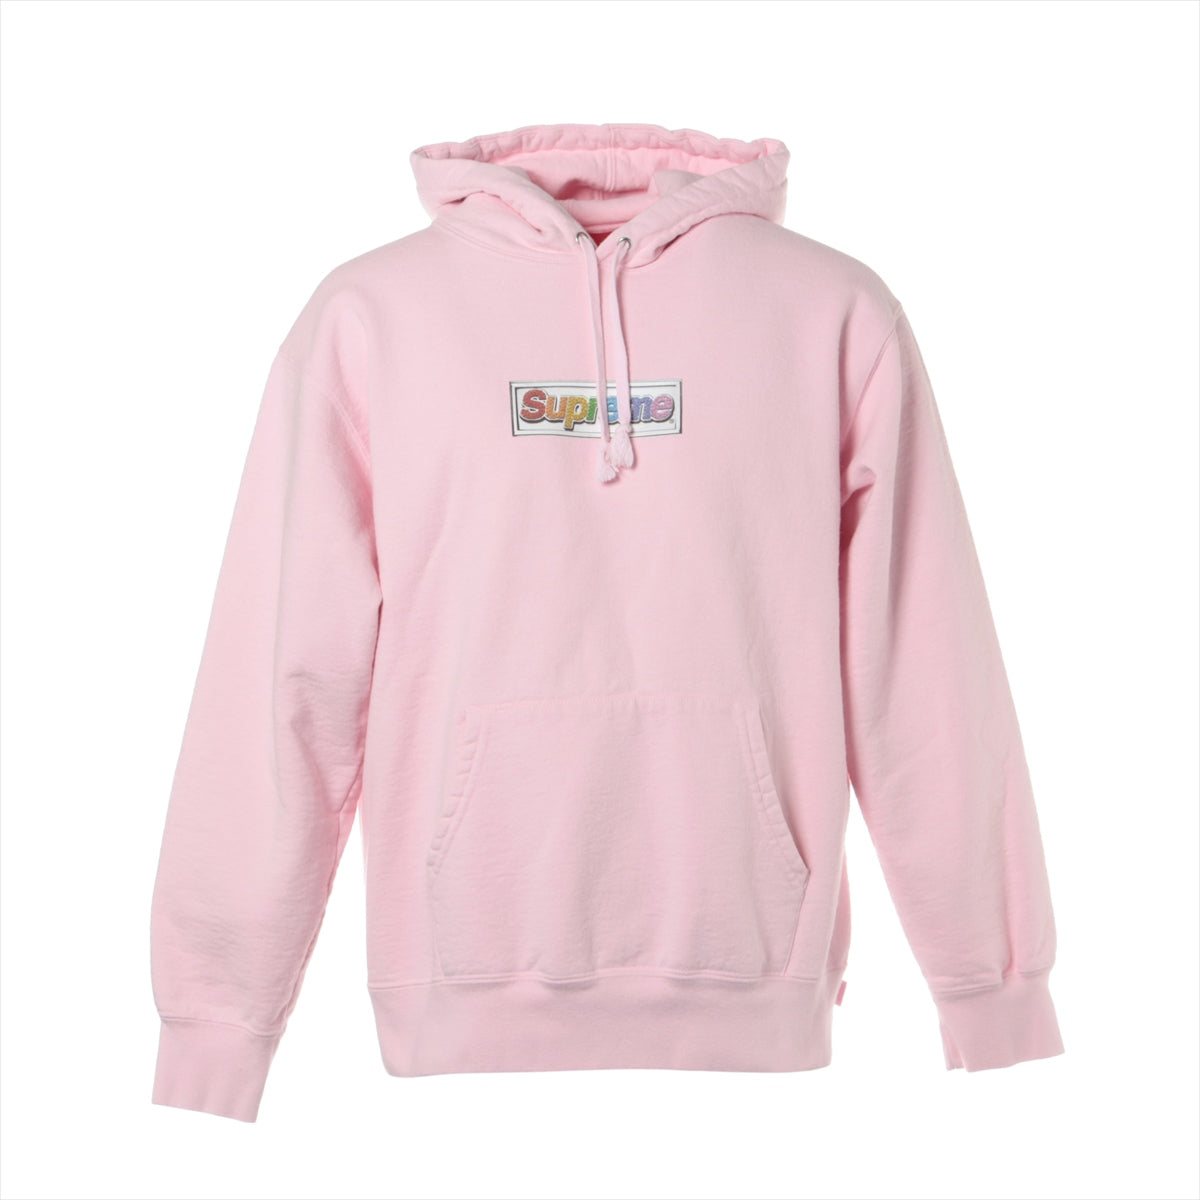 シュプリーム 22SS コットン×ポリエステル パーカー M メンズ ピンク  Bling Box Logo Hooded Sweatshirt